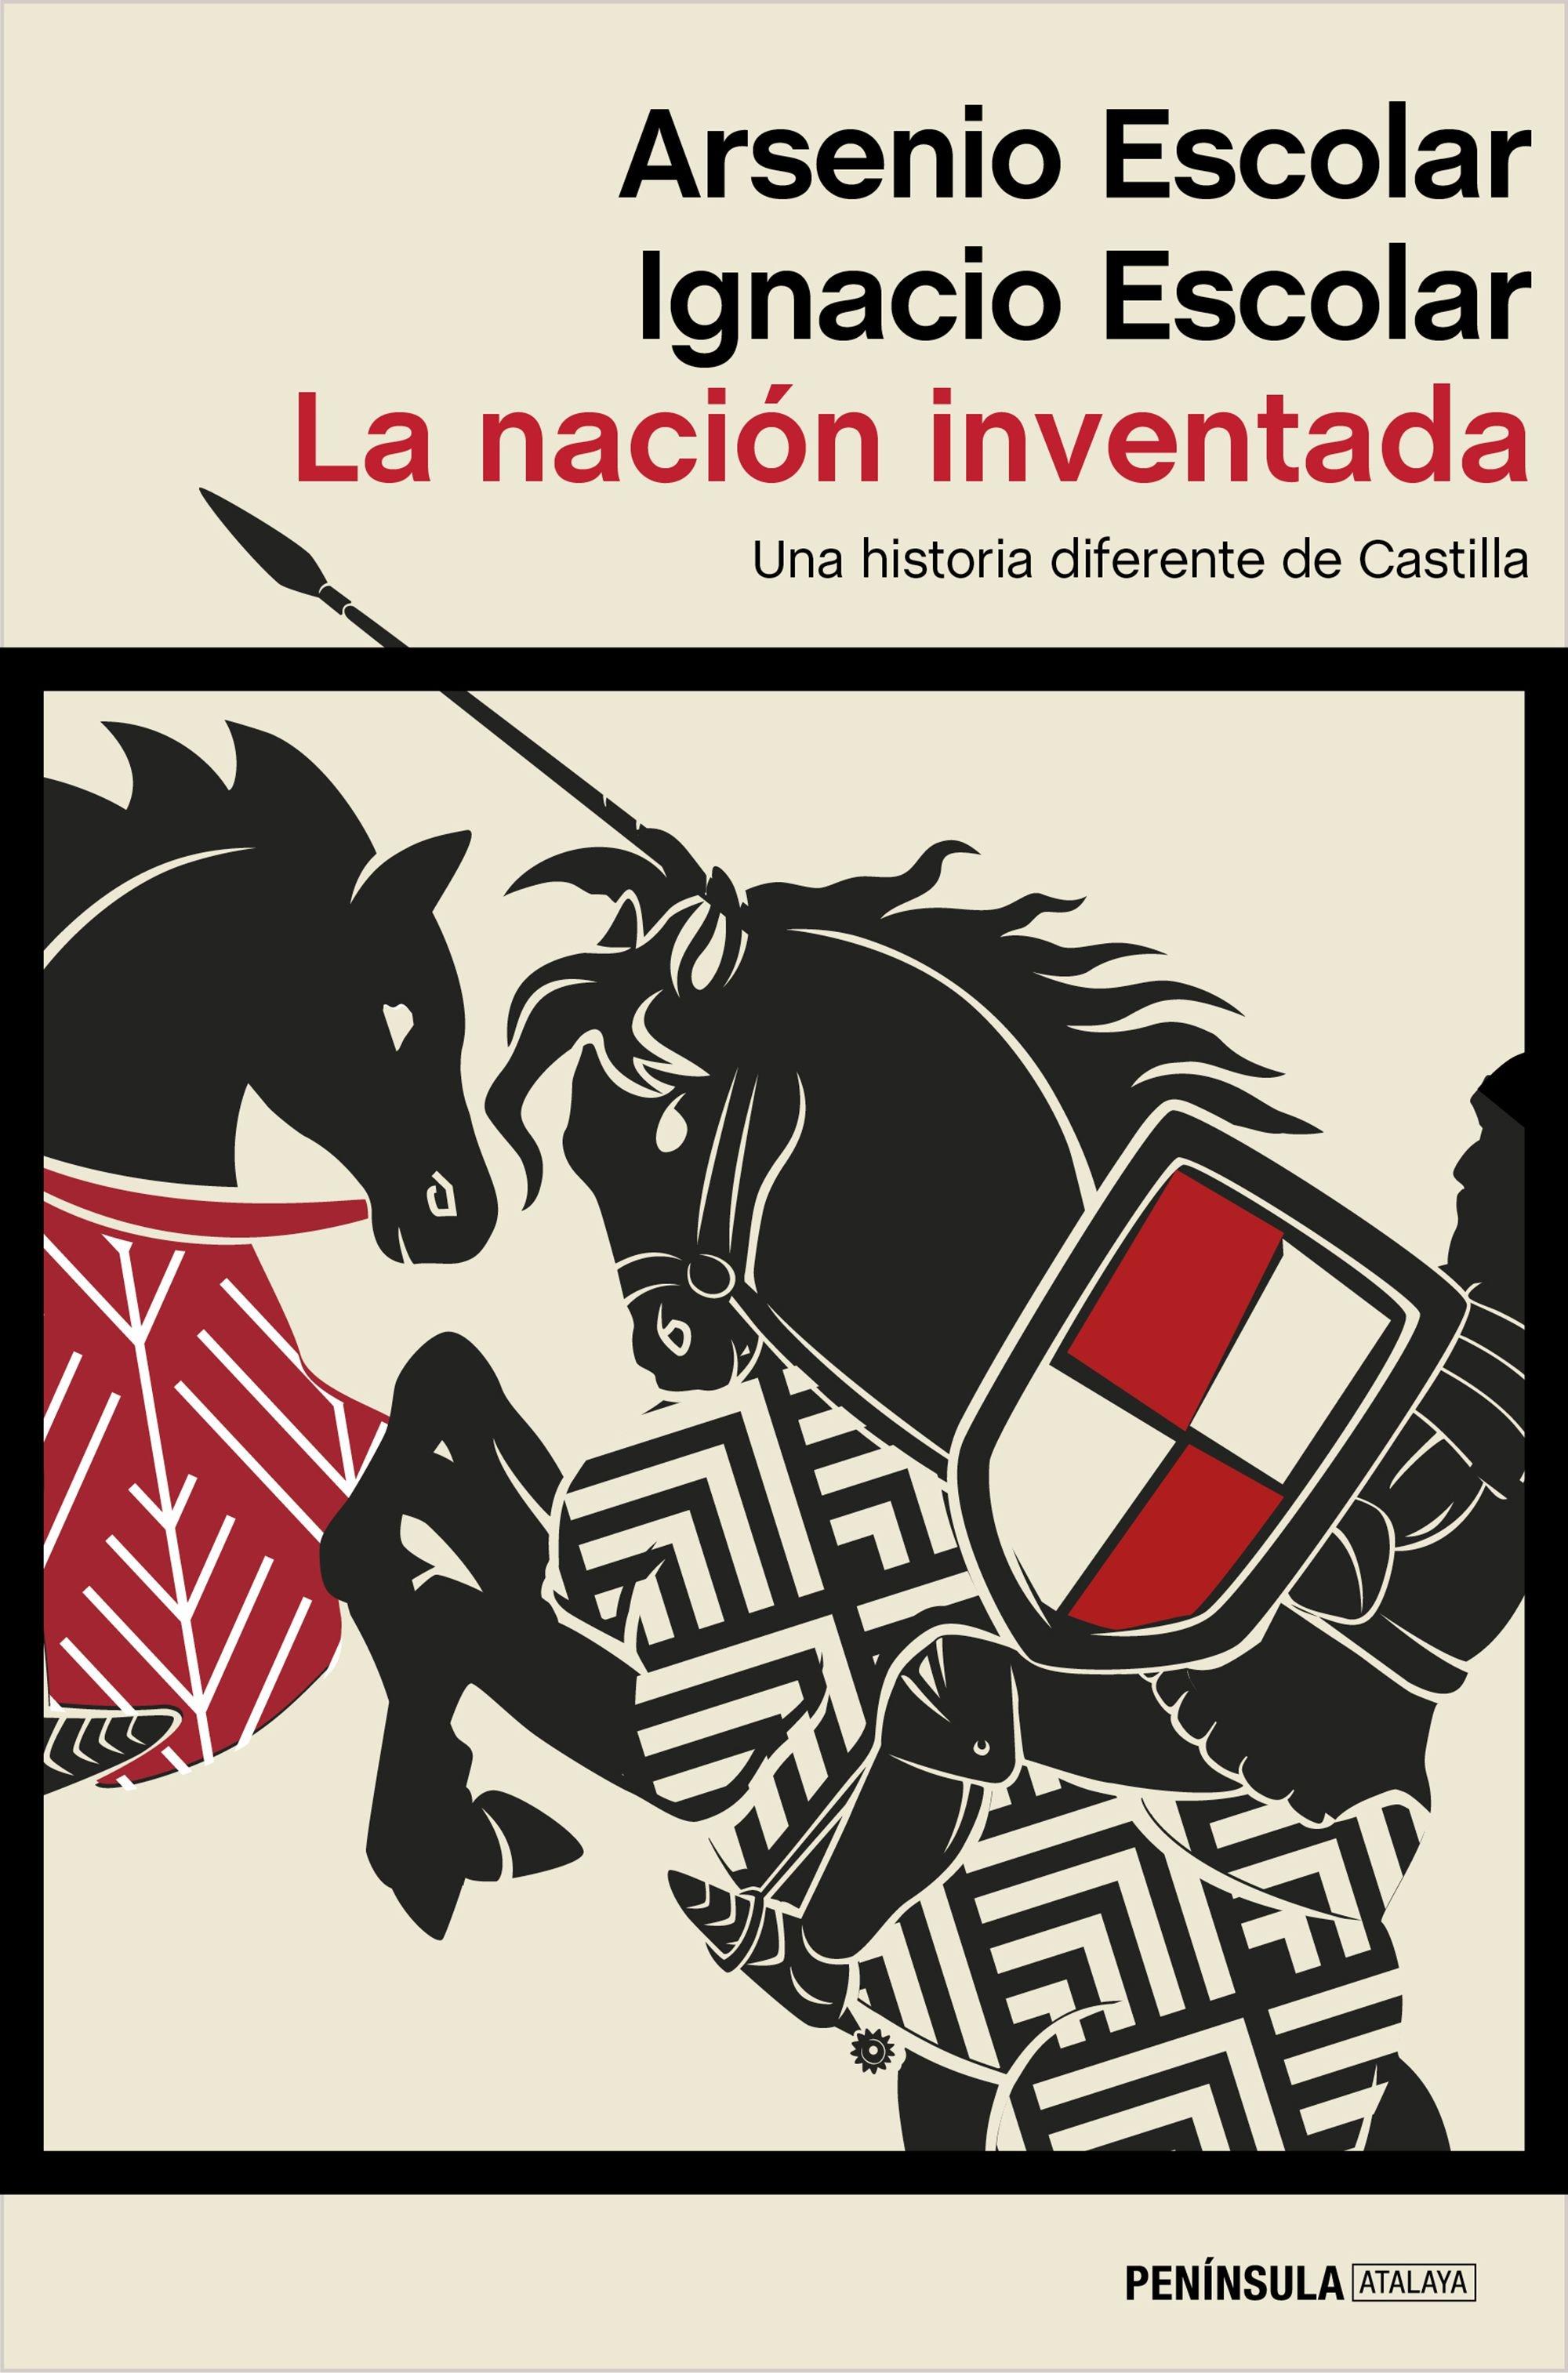 La nación inventada "Una historia diferente de Castilla". 